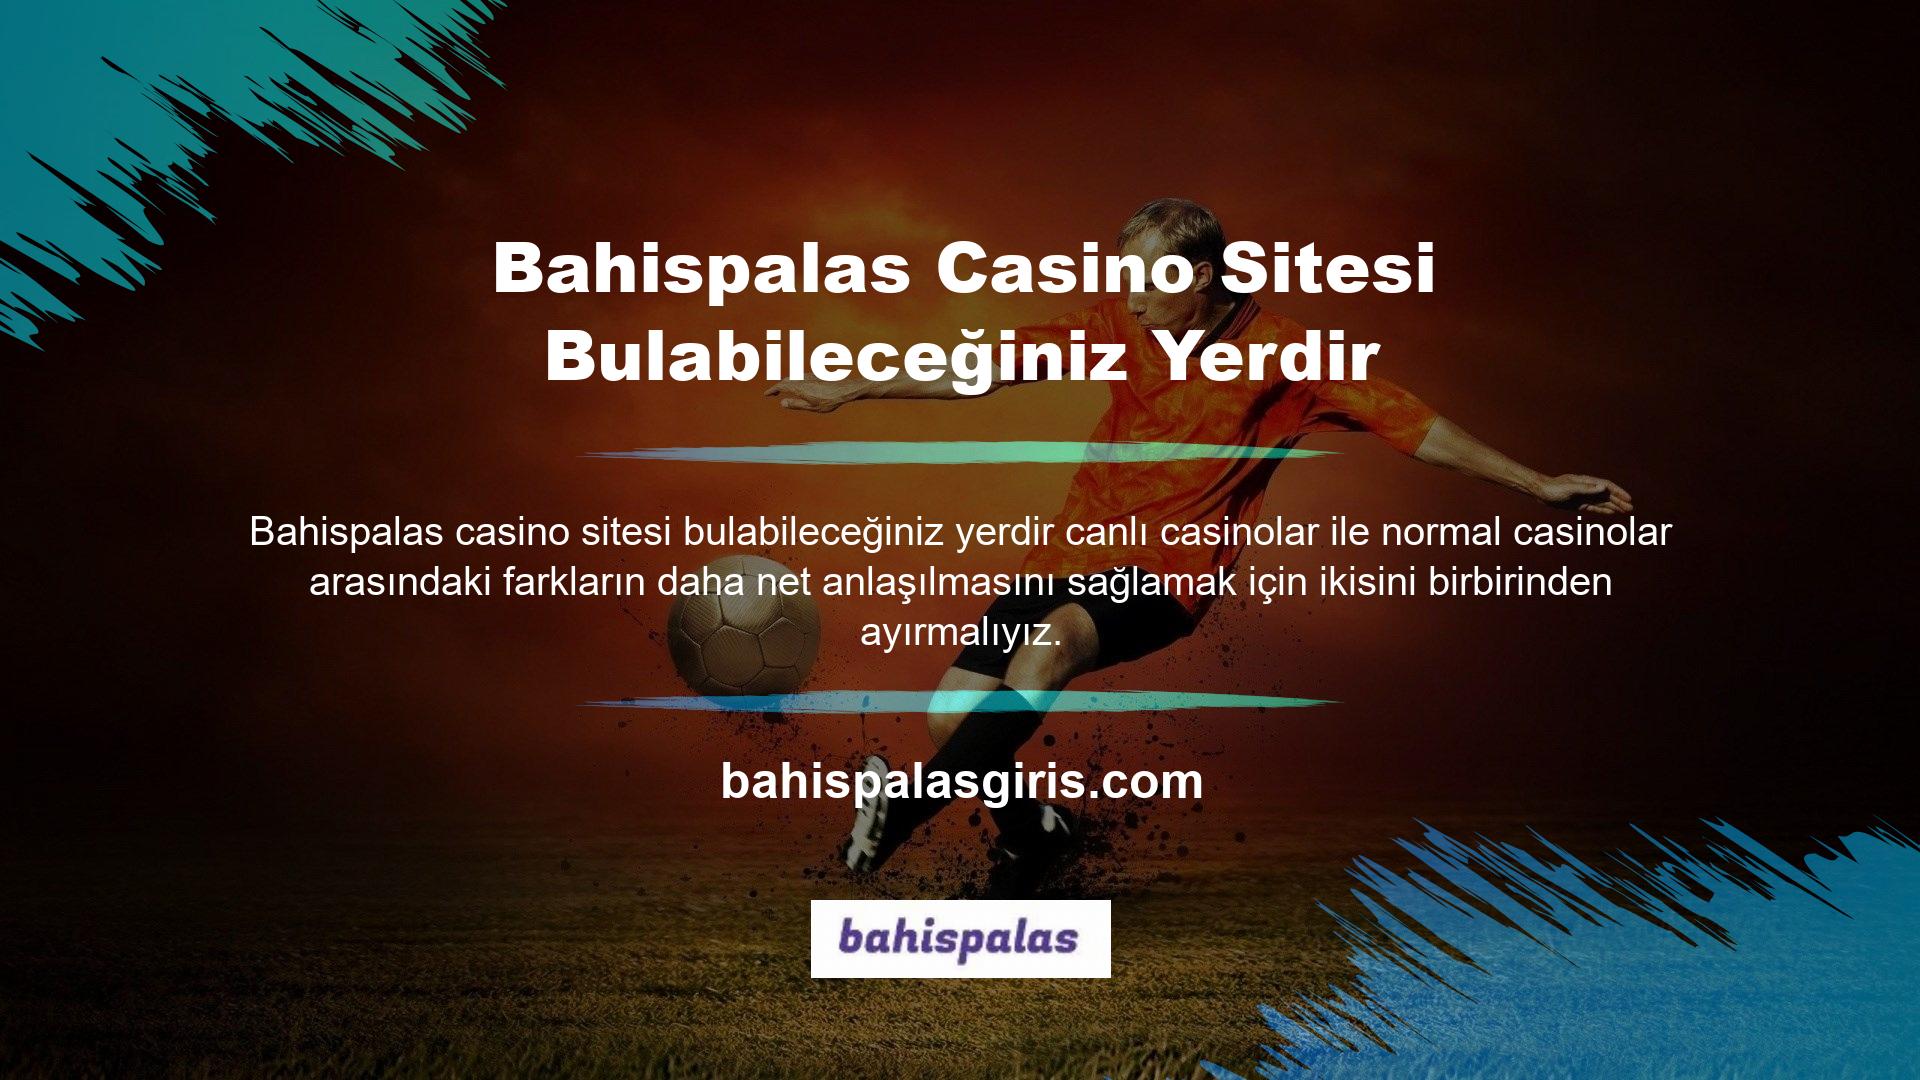 Klasik casino oyunu bilgisayarı içerir ve oyuncular Bahispalas casino sitesinde heyecan verici video oyunları oynayarak kazanabilir veya kaybedebilirler